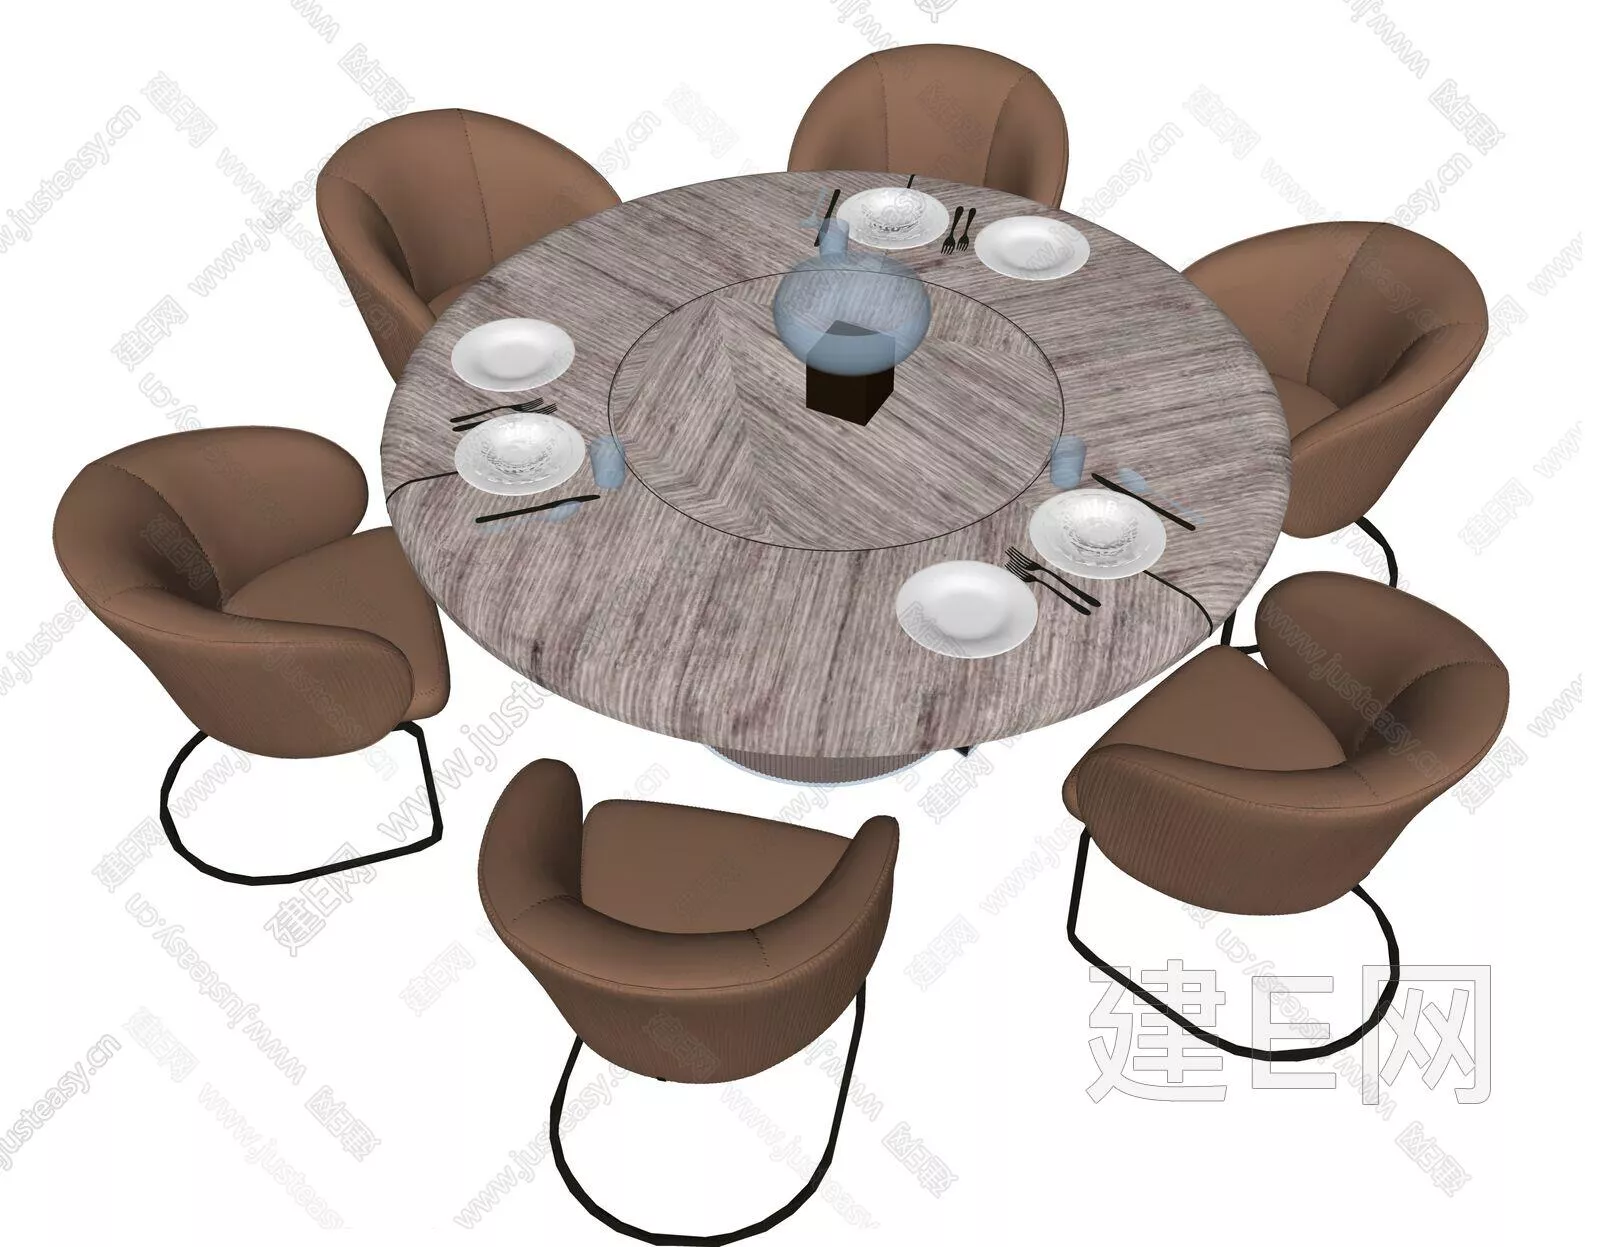 MODERN DINING TABLE SET - SKETCHUP 3D MODEL - ENSCAPE - 112542146